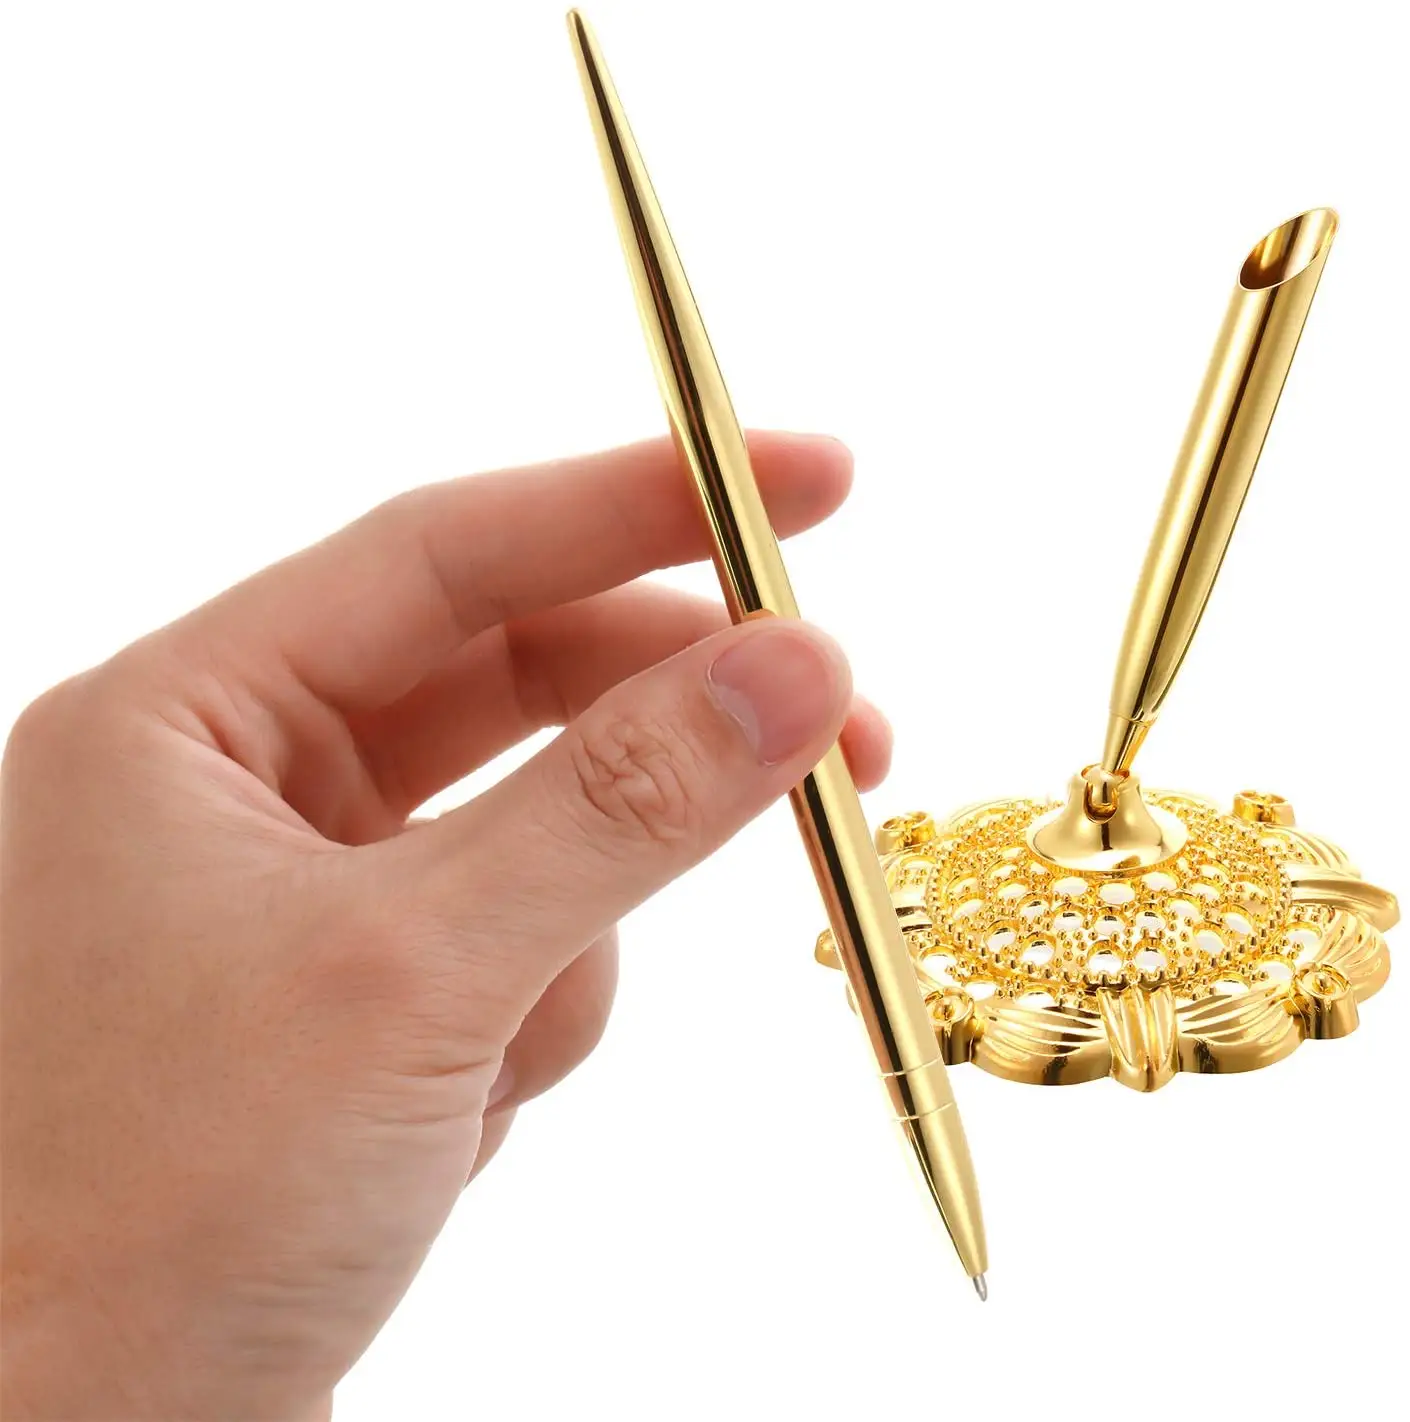 ชุดปากกาโลหะสีทองกลวงแบบโค้งสำหรับงานแต่งงาน,ชุดปากกาสำหรับงานแต่งงานงานหมั้นแขกและหนังสือ